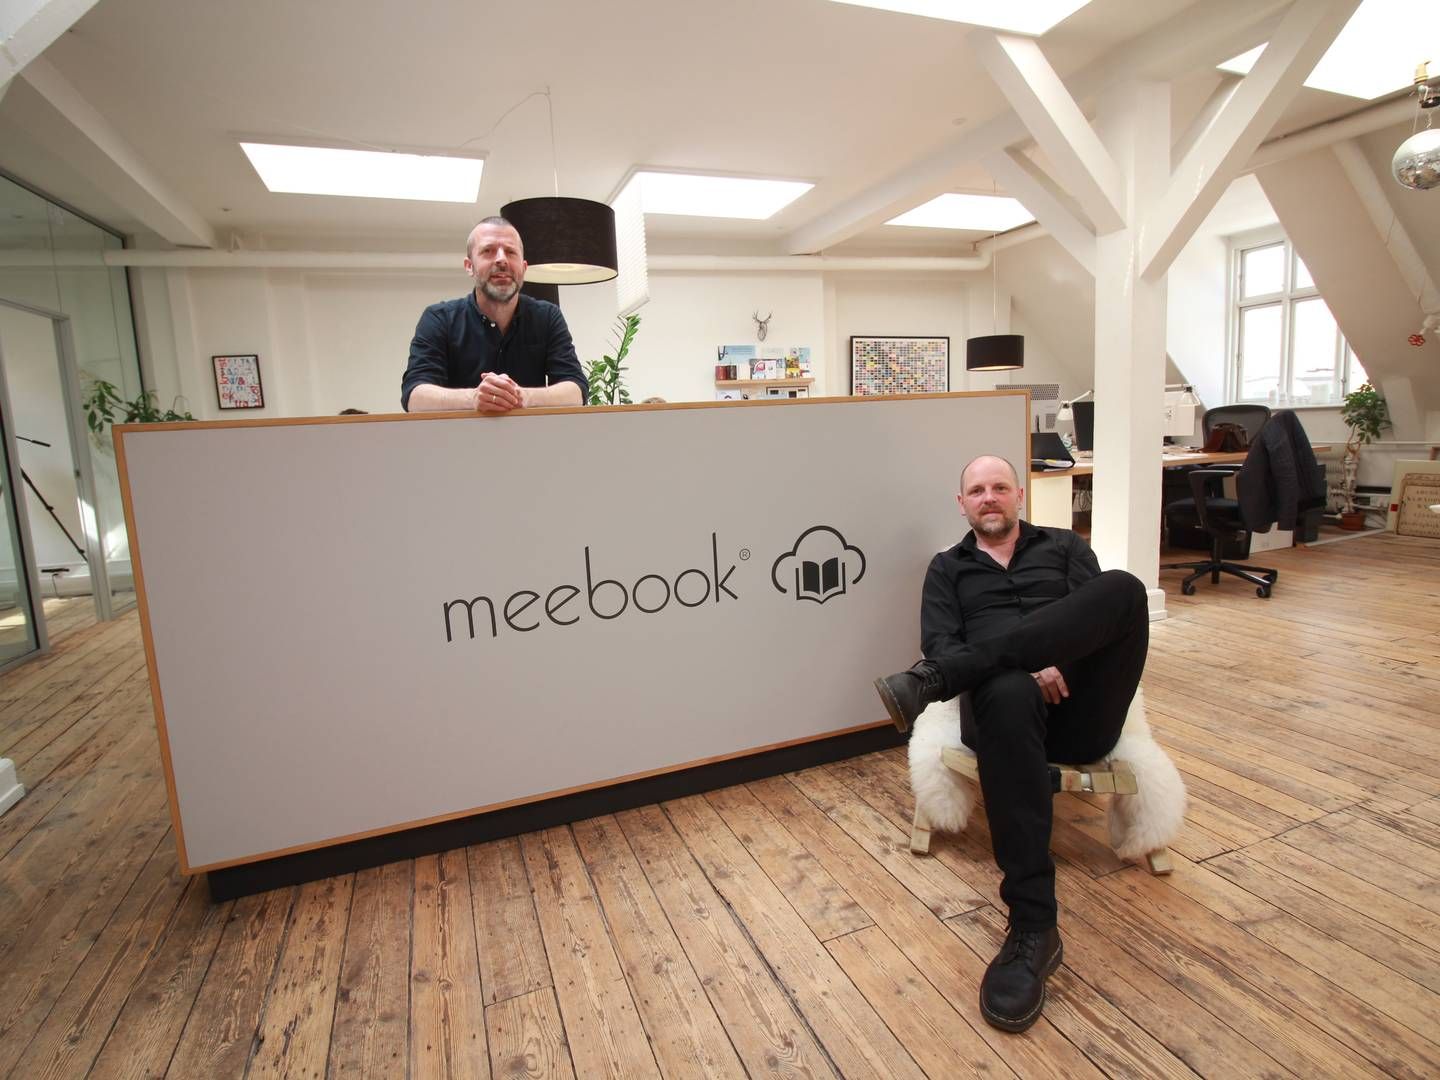 Meebooks stiftere, Jesper Rømer (tv.) og Søren Adolph, som har været med til at sælge læringsplatformen til Visma | Foto: Visma / PR